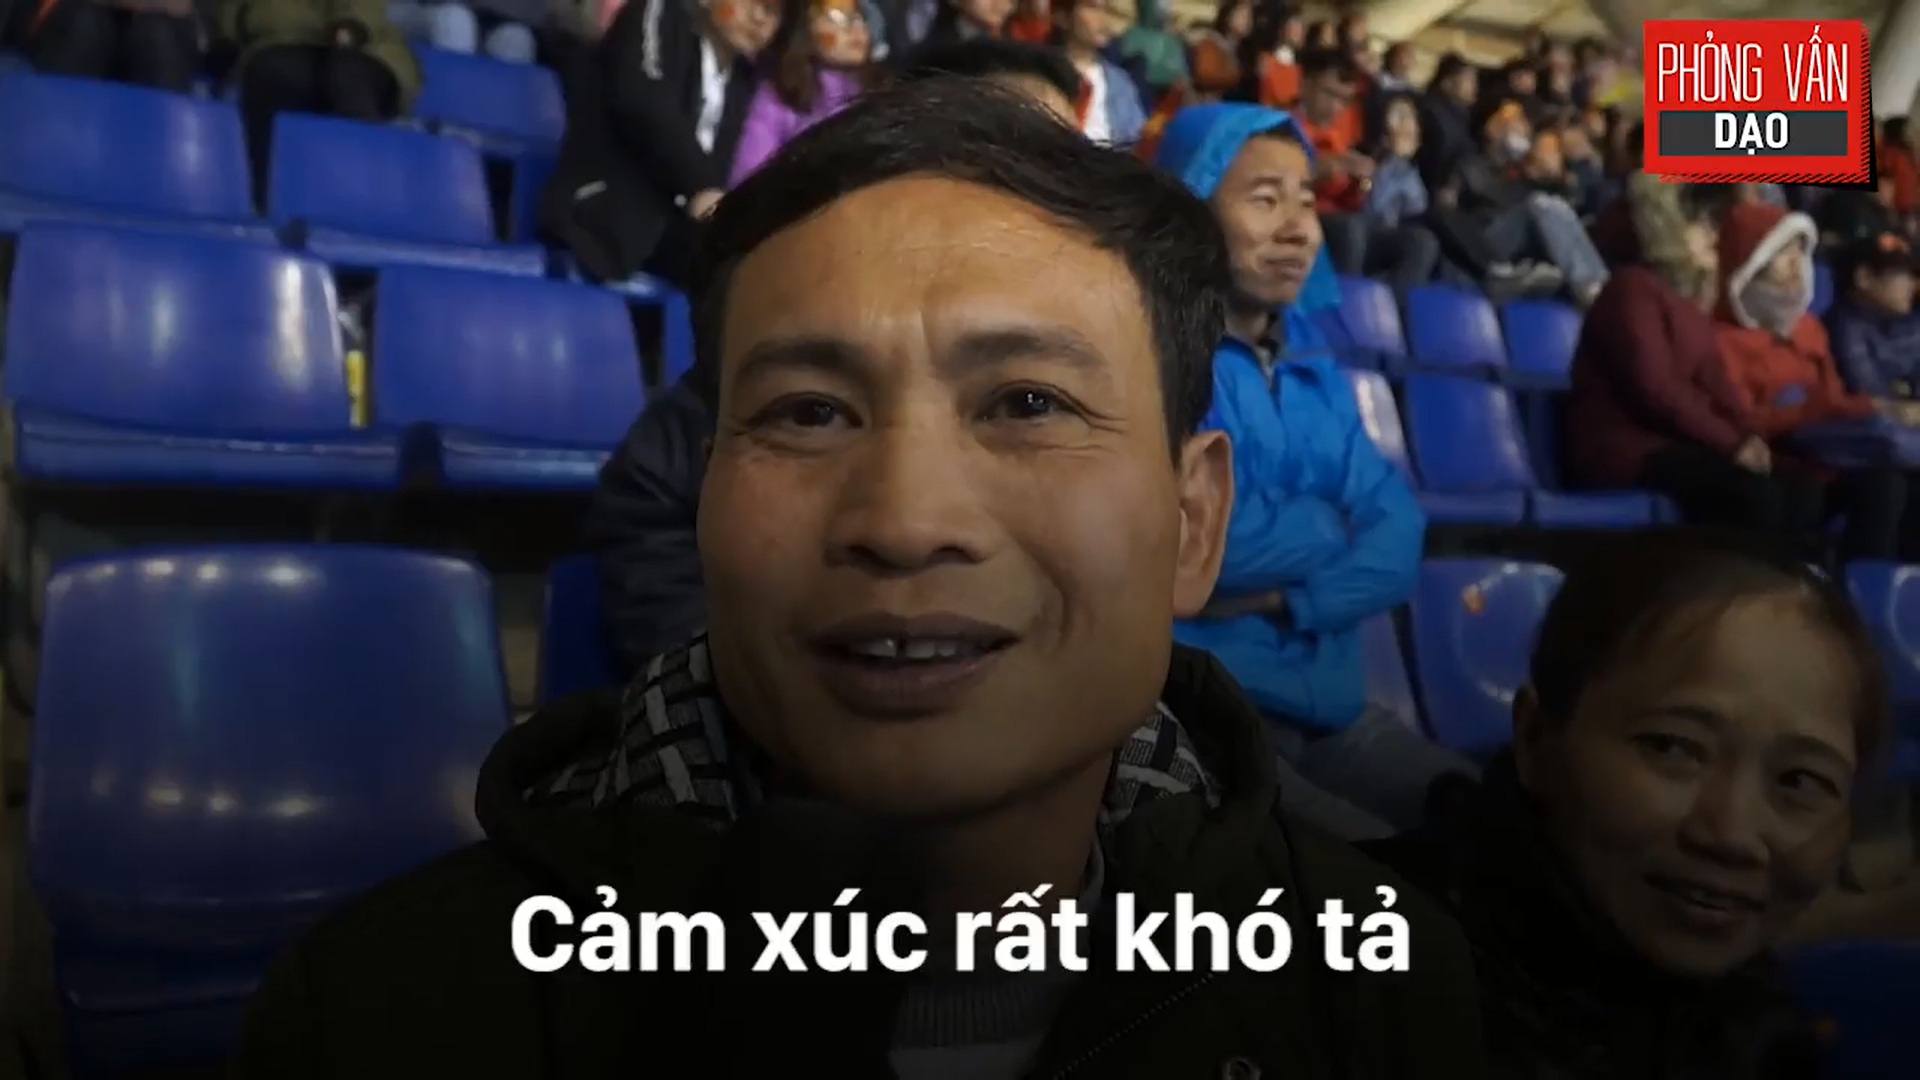 Phỏng vấn dạo: Cảm xúc của người hâm mộ khi đón U23 Việt Nam trở về trong vòng tay - Ảnh 2.